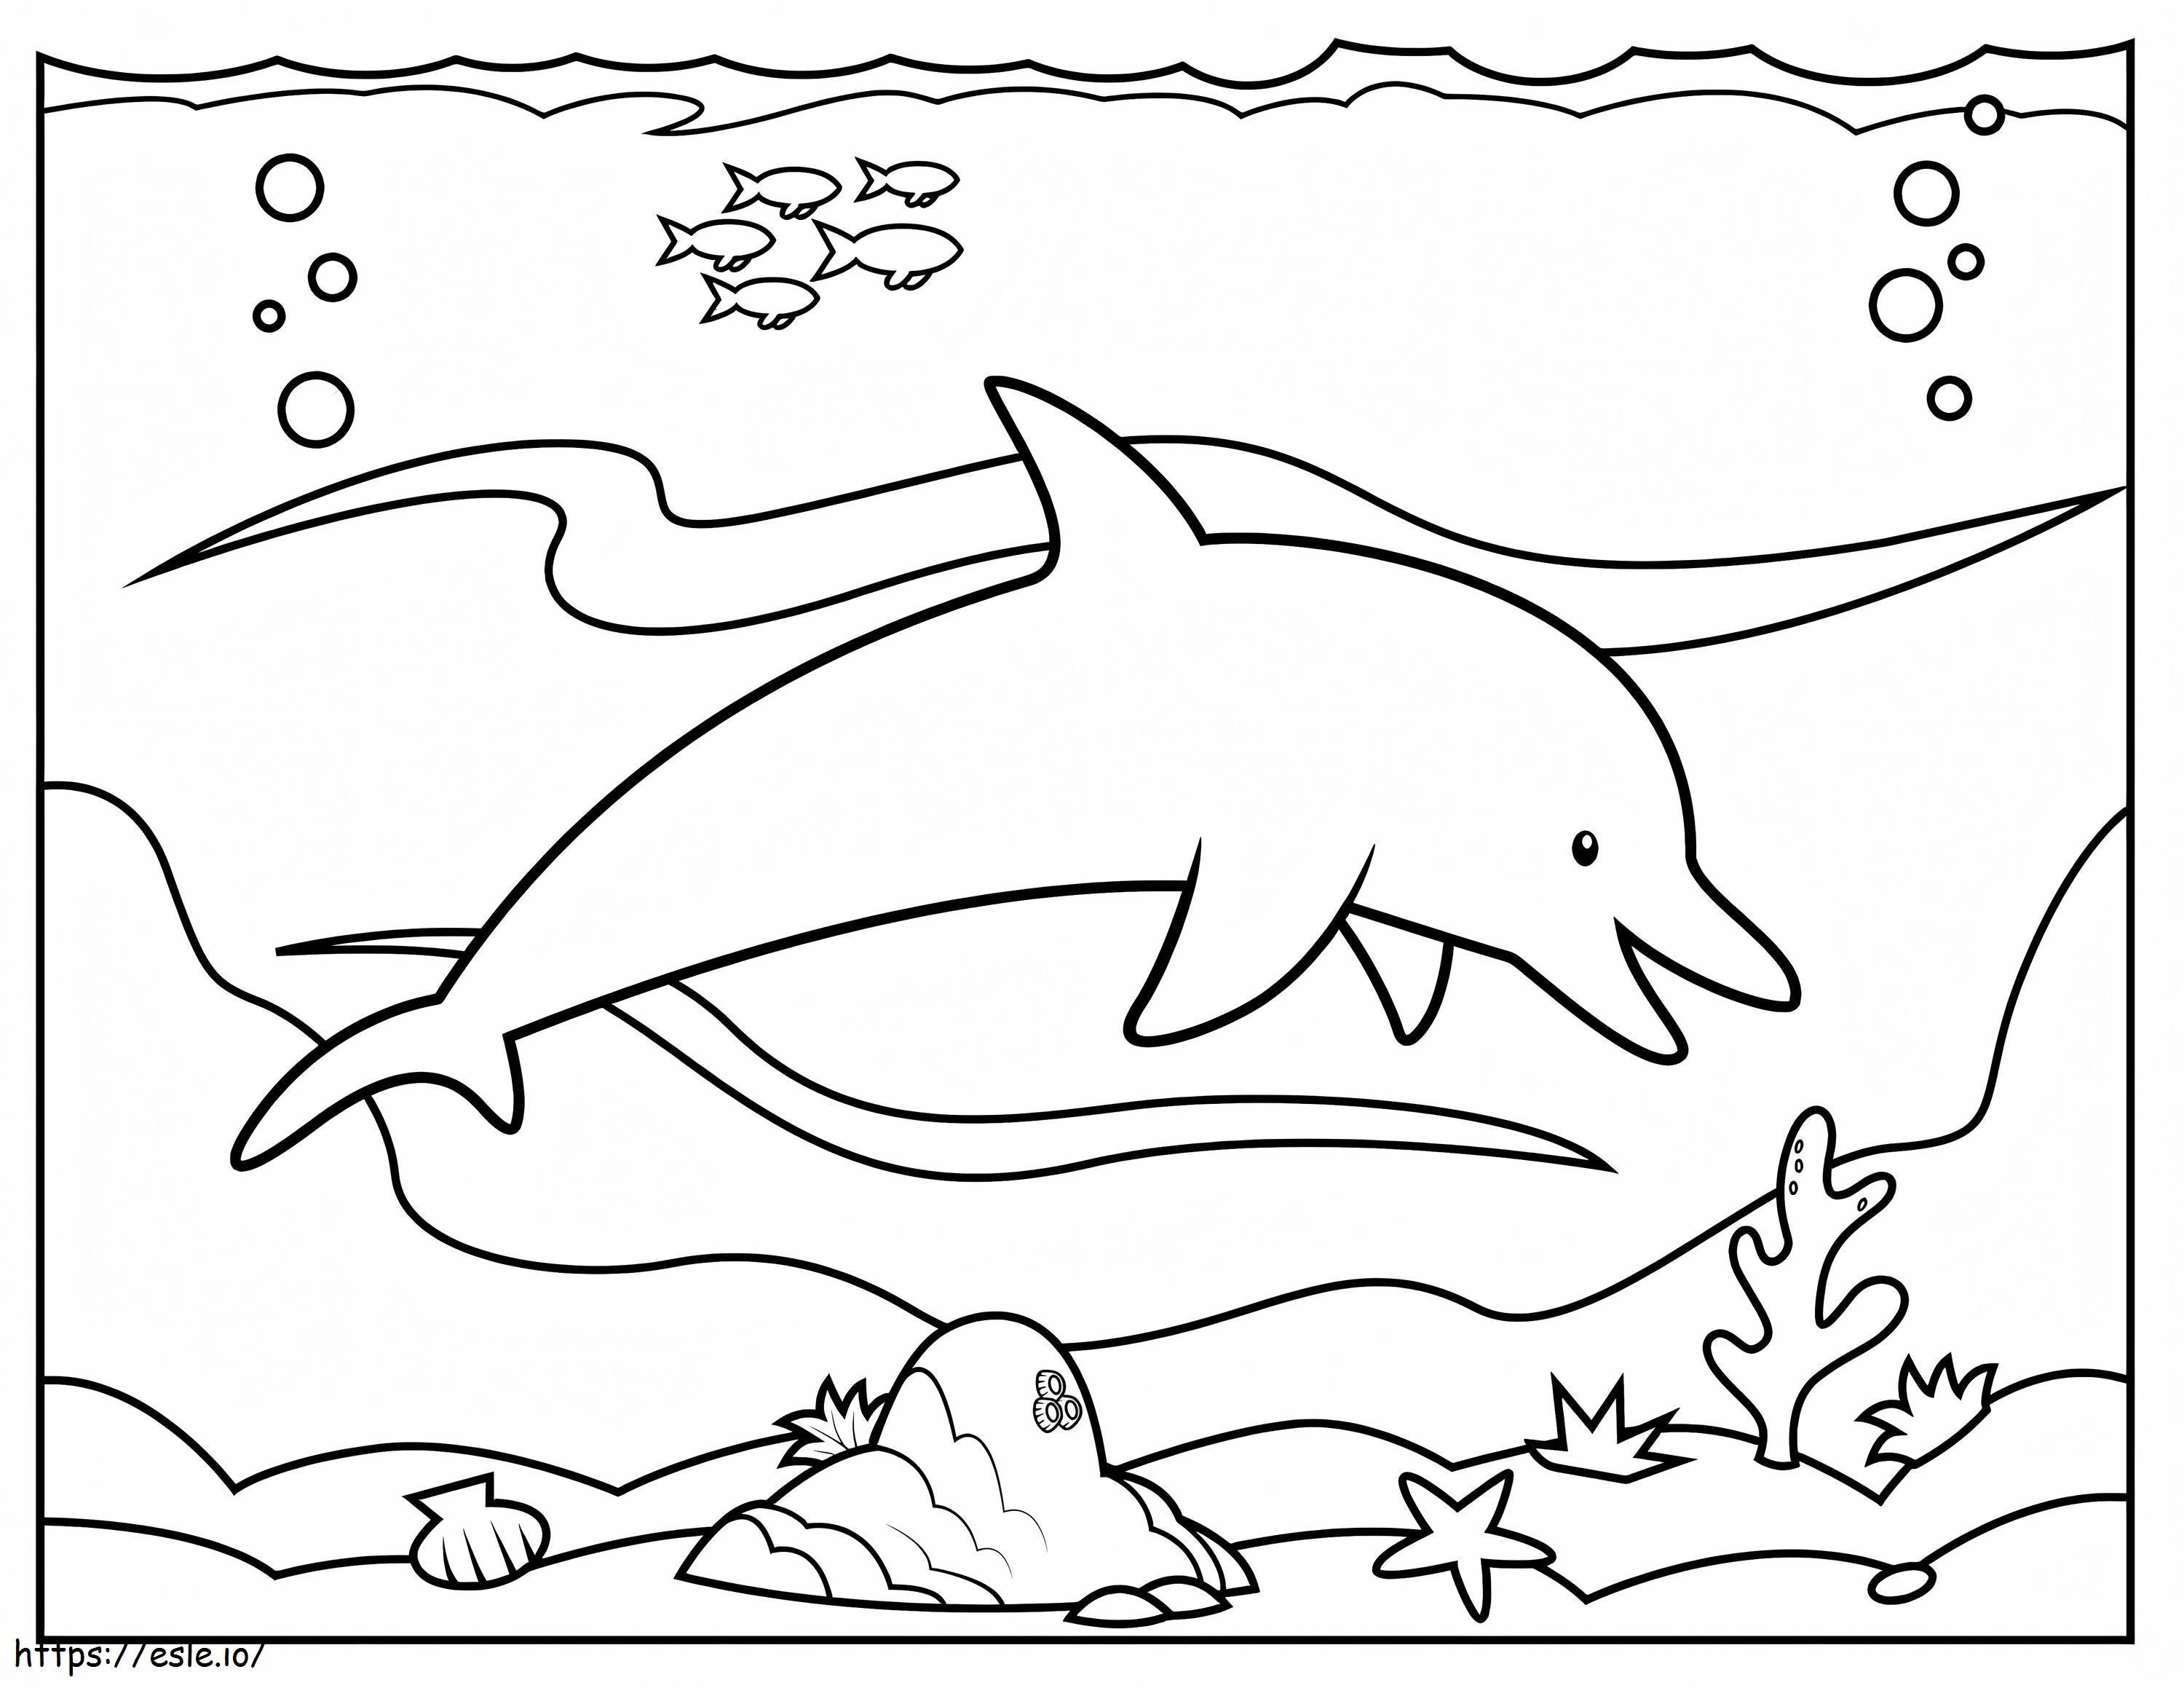 Delfin Simple coloring page